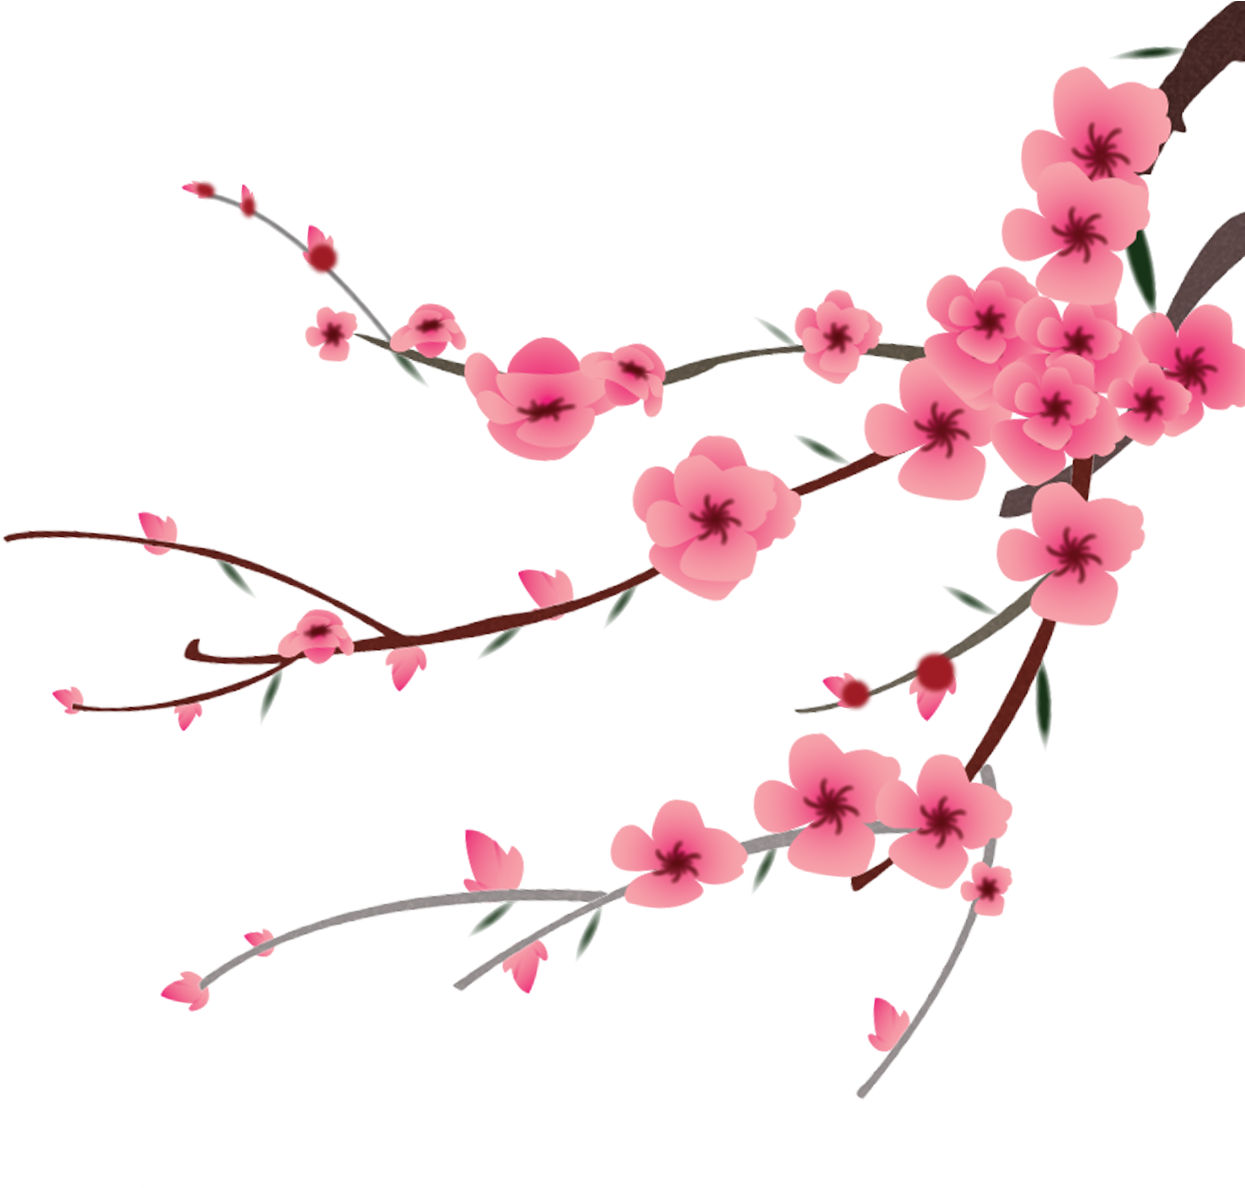 Petal Peach Blossom Flower - Transparent Peach Cherry Blossom (1701x1516)